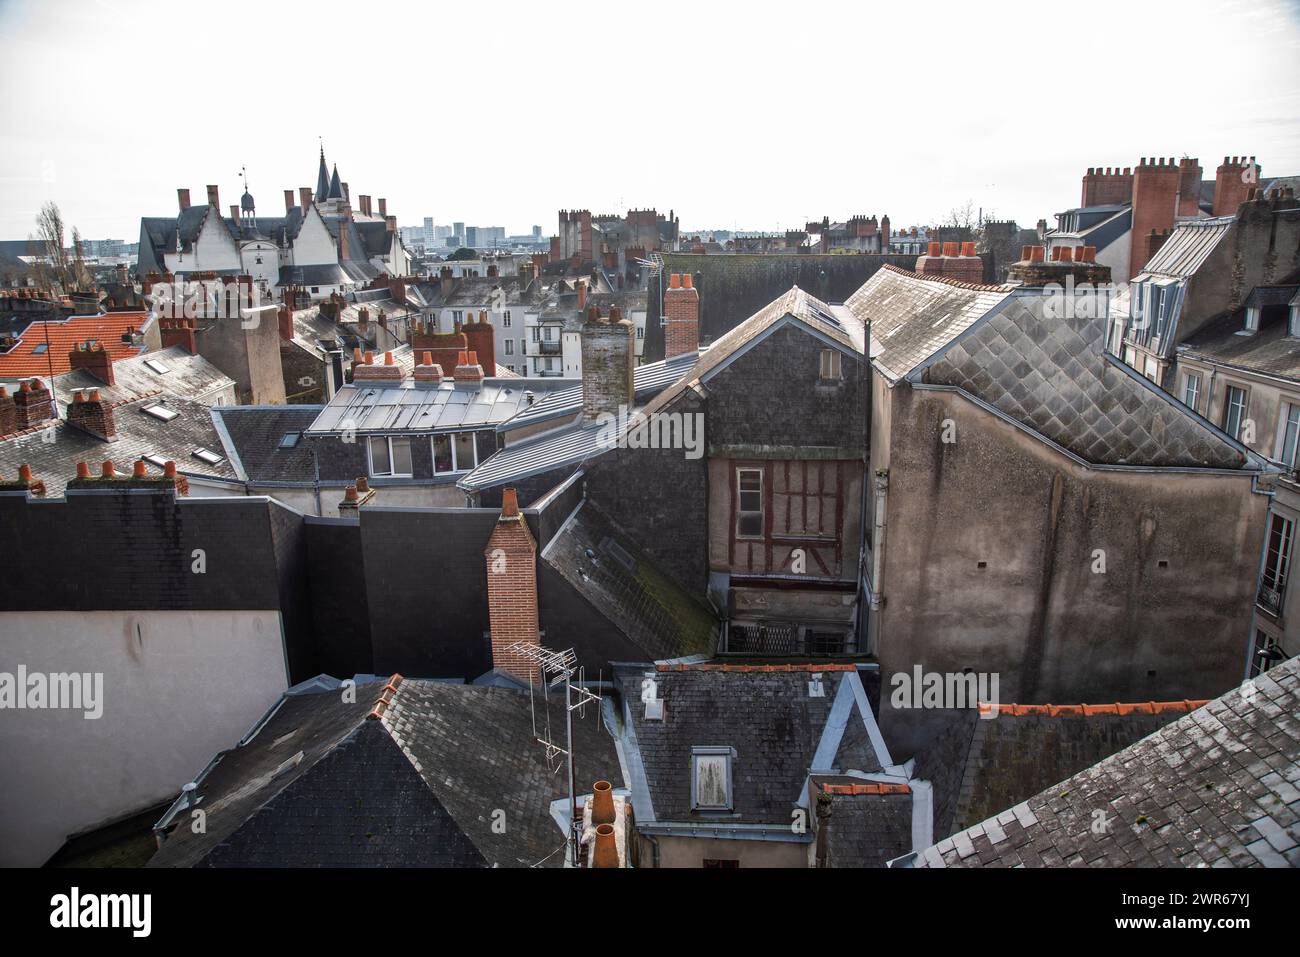 Paysage urbain, vue sur les bâtiments anciens près du château de Nantes, France. Toits de vieilles maisons de ville françaises. Banque D'Images